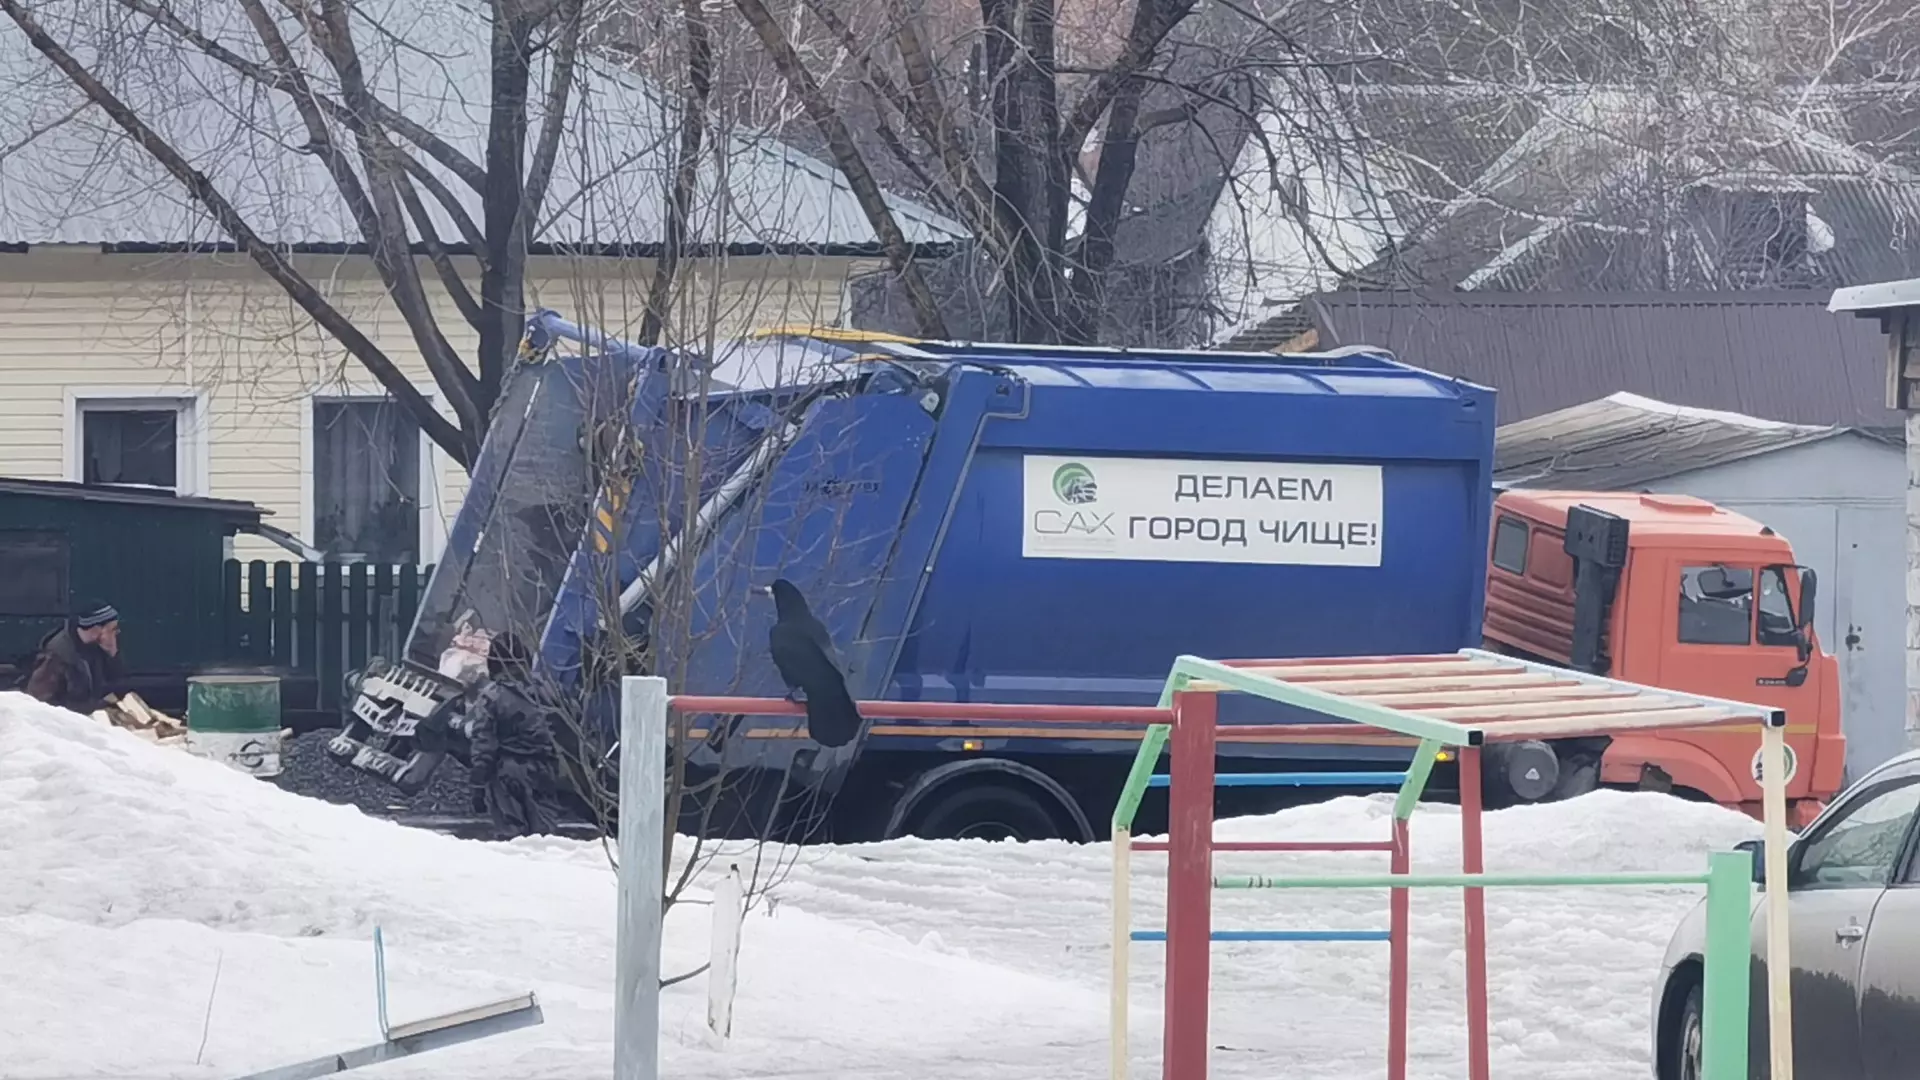 МУП «САХ» является оператором по обращению с твердыми бытовыми отходами в Новосибирской области